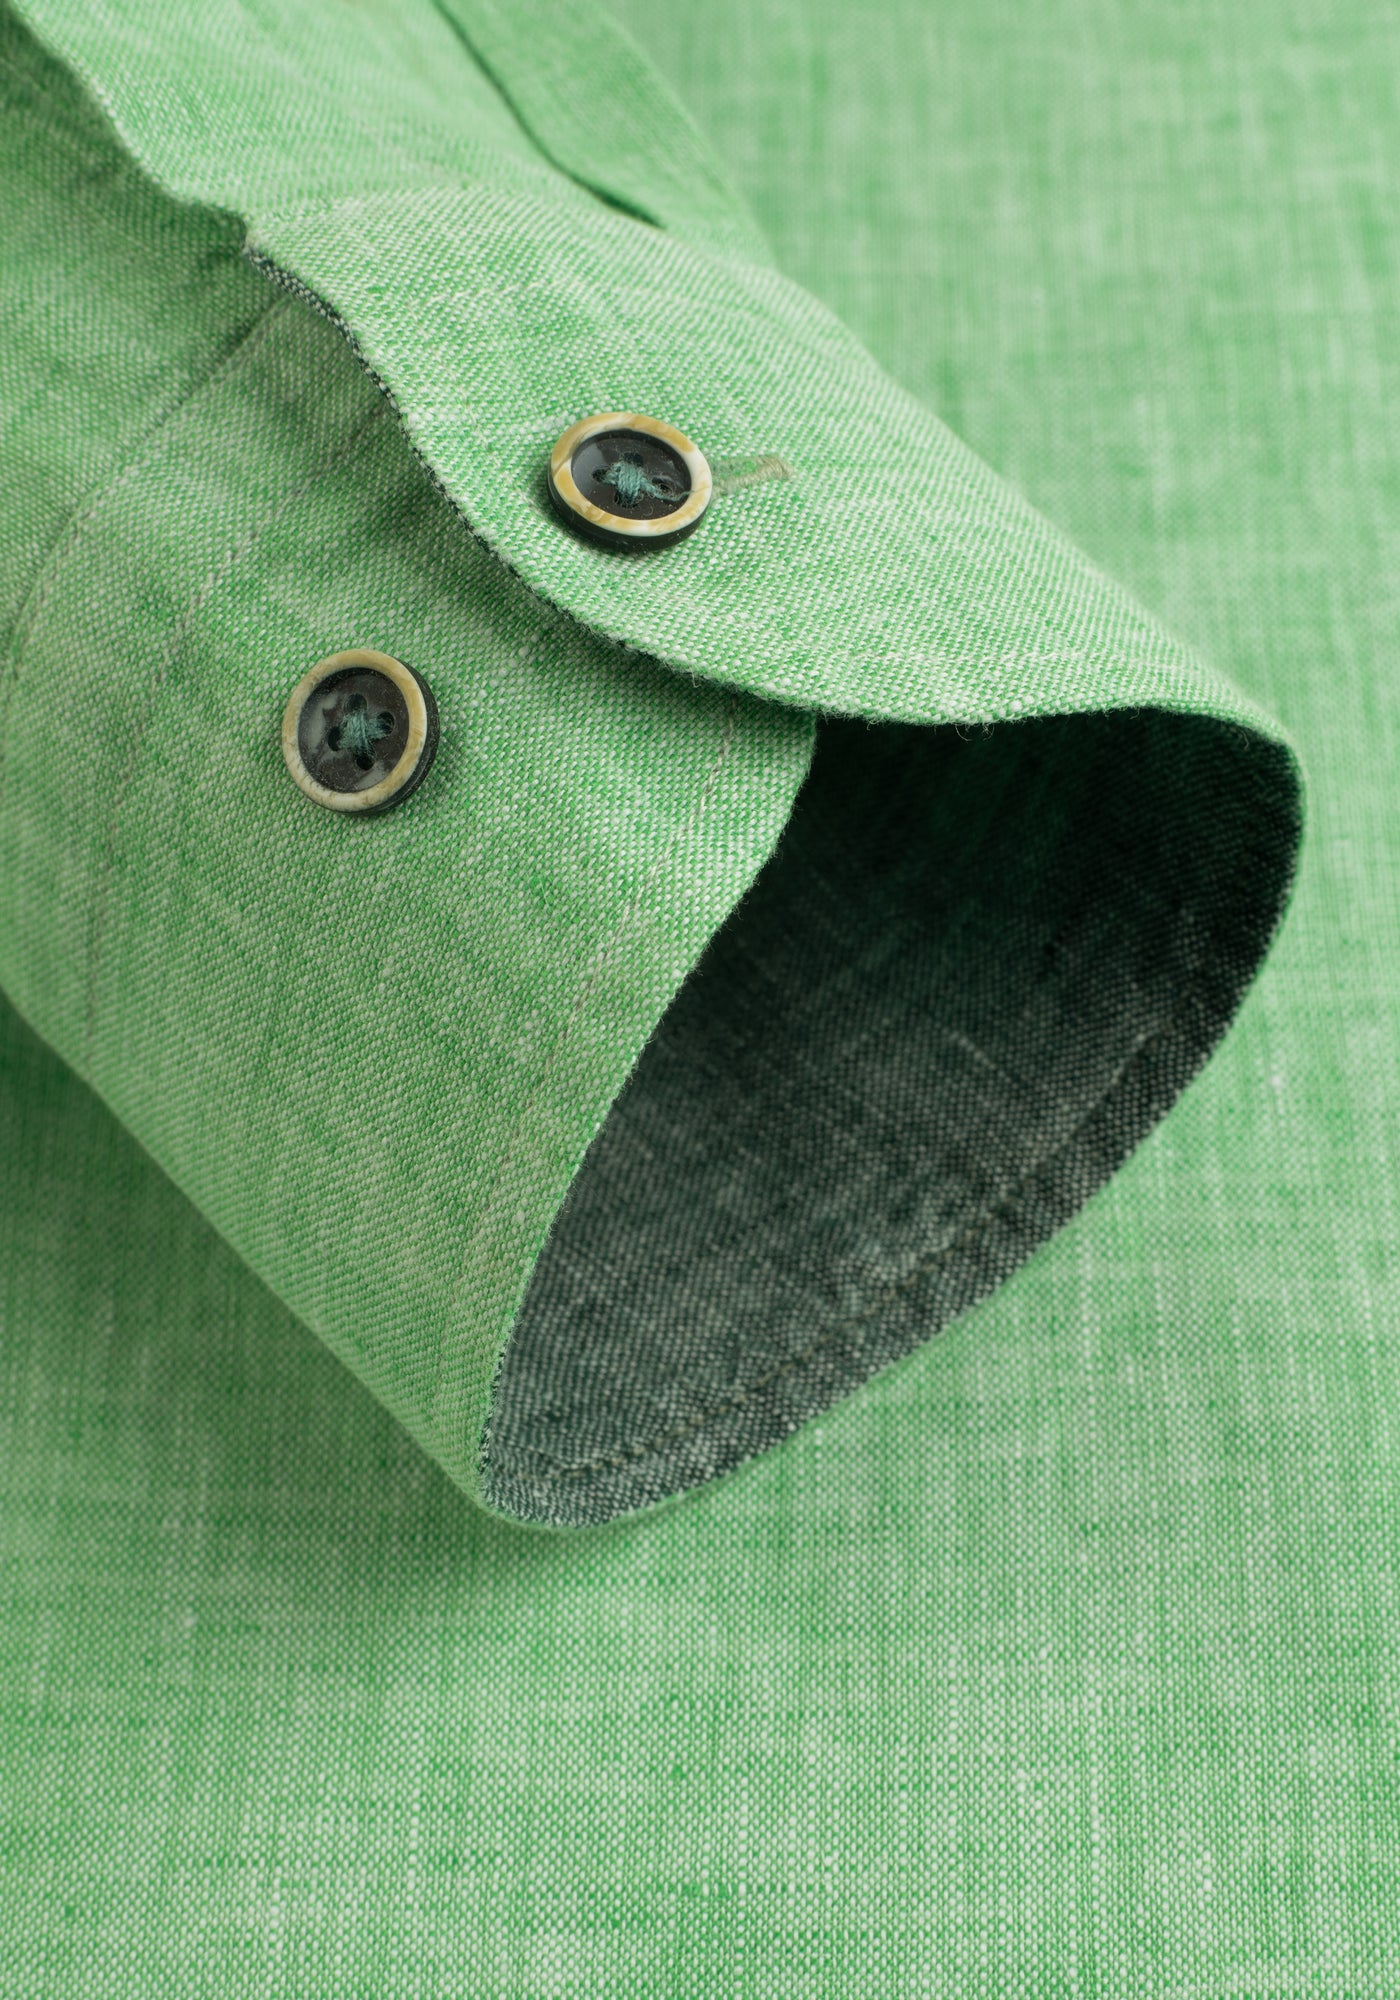 Baby Green Belgian Linen Shirt